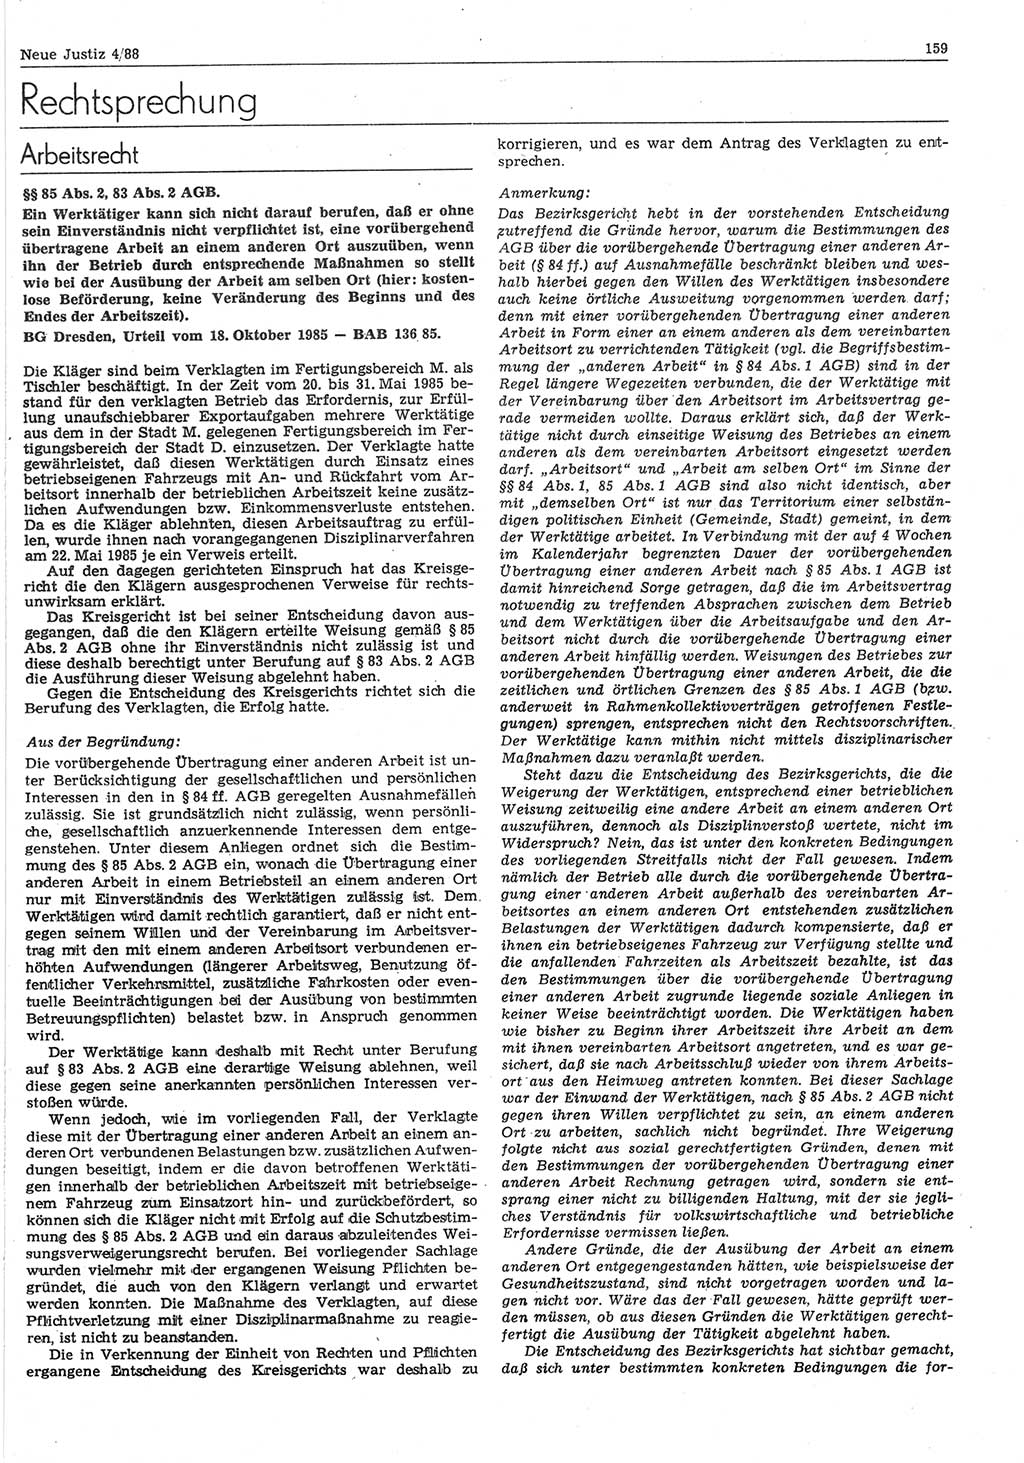 Neue Justiz (NJ), Zeitschrift für sozialistisches Recht und Gesetzlichkeit [Deutsche Demokratische Republik (DDR)], 42. Jahrgang 1988, Seite 159 (NJ DDR 1988, S. 159)